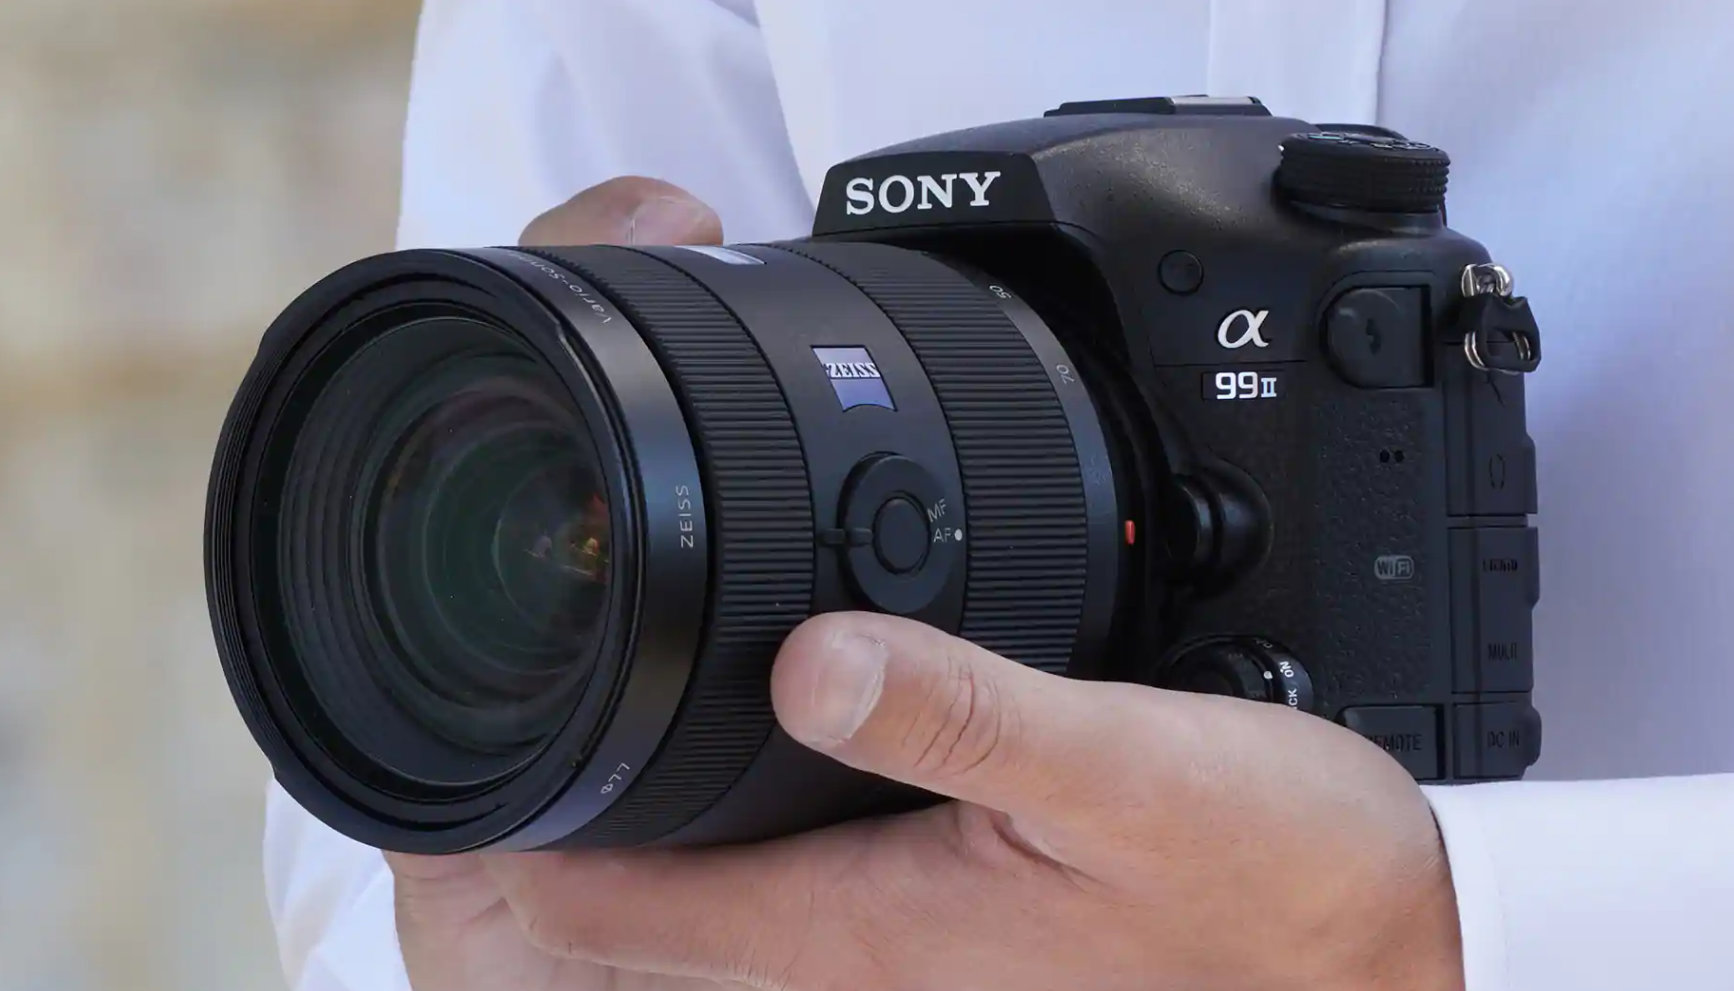 Sony beginnt offenbar mit dem Abschied von DSLR-Kameras